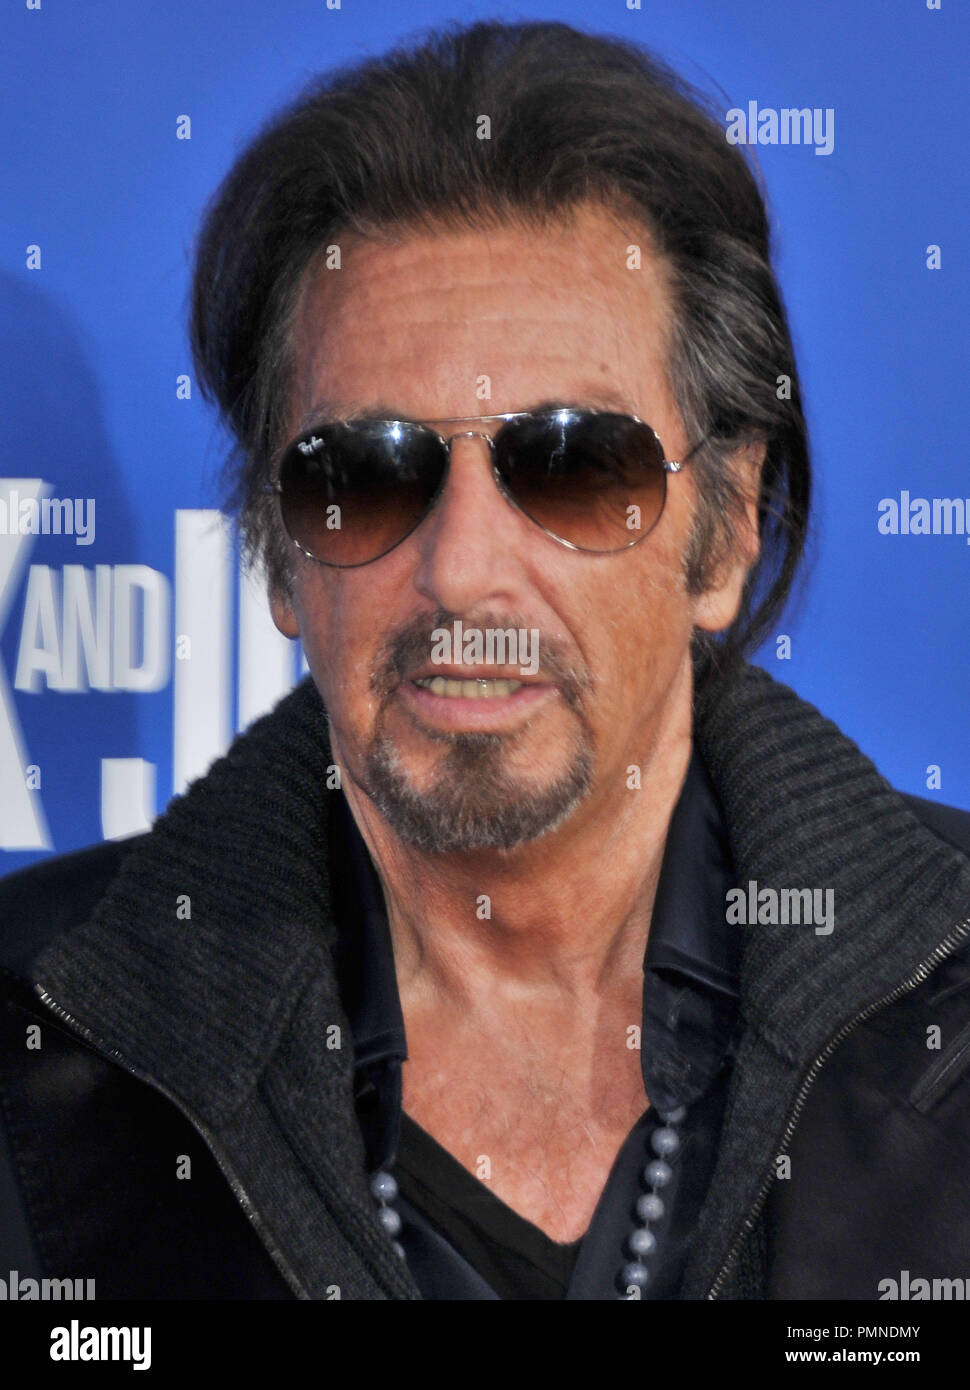 Al Pacino presso il Los Angeles Premiere di 'Jack e Jill" tenutasi presso il Regency Village Theatre di Westwood, CA. La manifestazione si è svolta domenica 6 novembre 2011. Foto di PRPP/ PictureLux Foto Stock